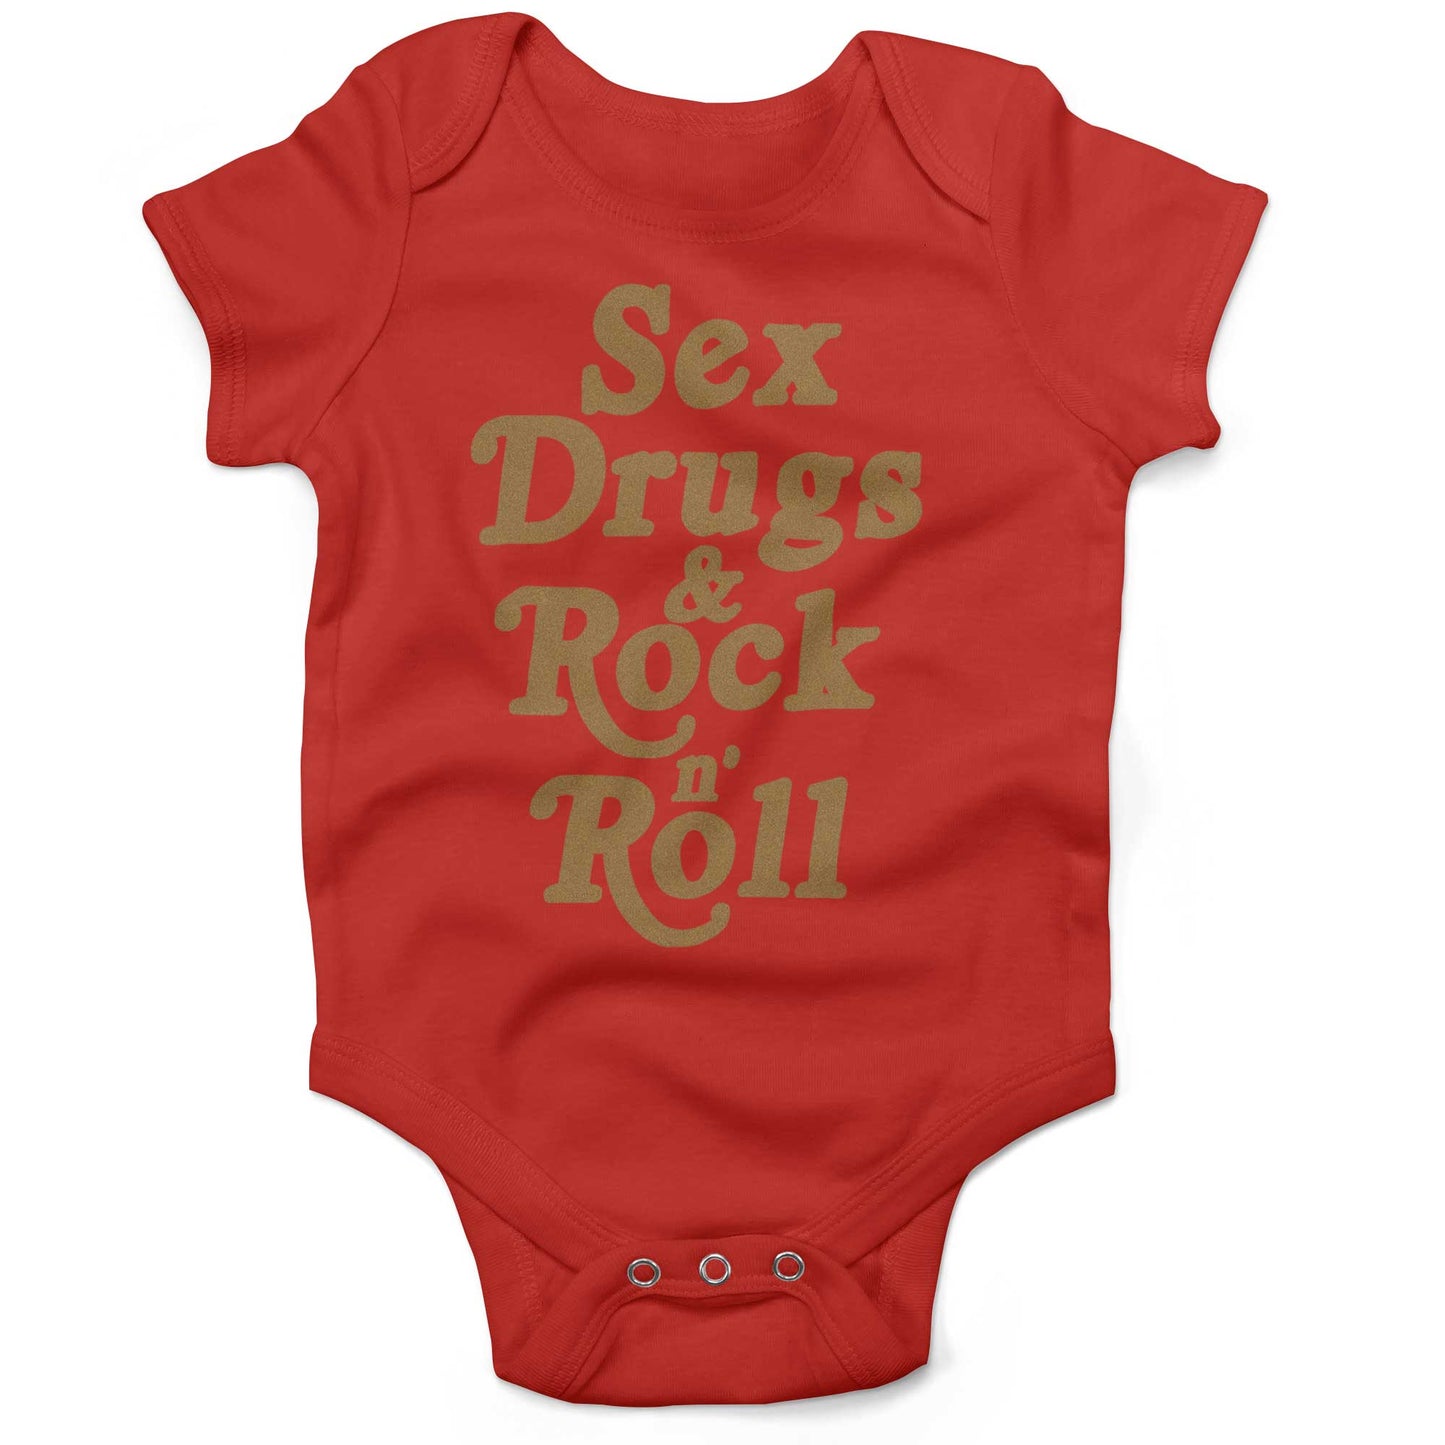 Sex, Drugs & Rock 'n Roll Infant Bodysuit or Raglan Baby Tee-Organic Red-3-6 months